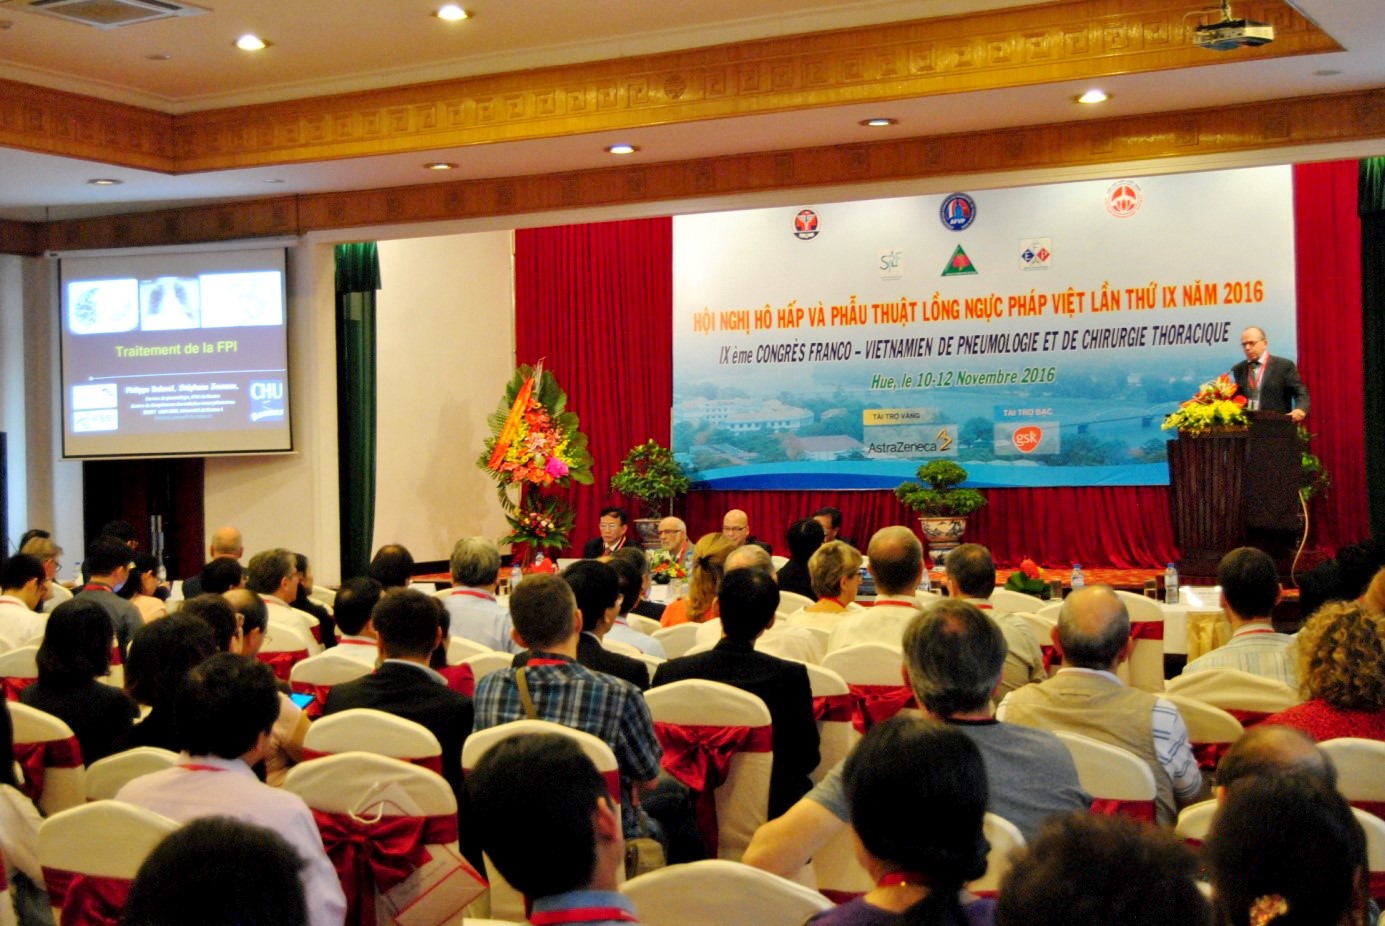 Hội nghị Hô hấp và Phẫu thuật Lồng ngực Pháp-Việt lần thứ IX năm 2016 diễn ra với đông đảo khách mời tham gia.